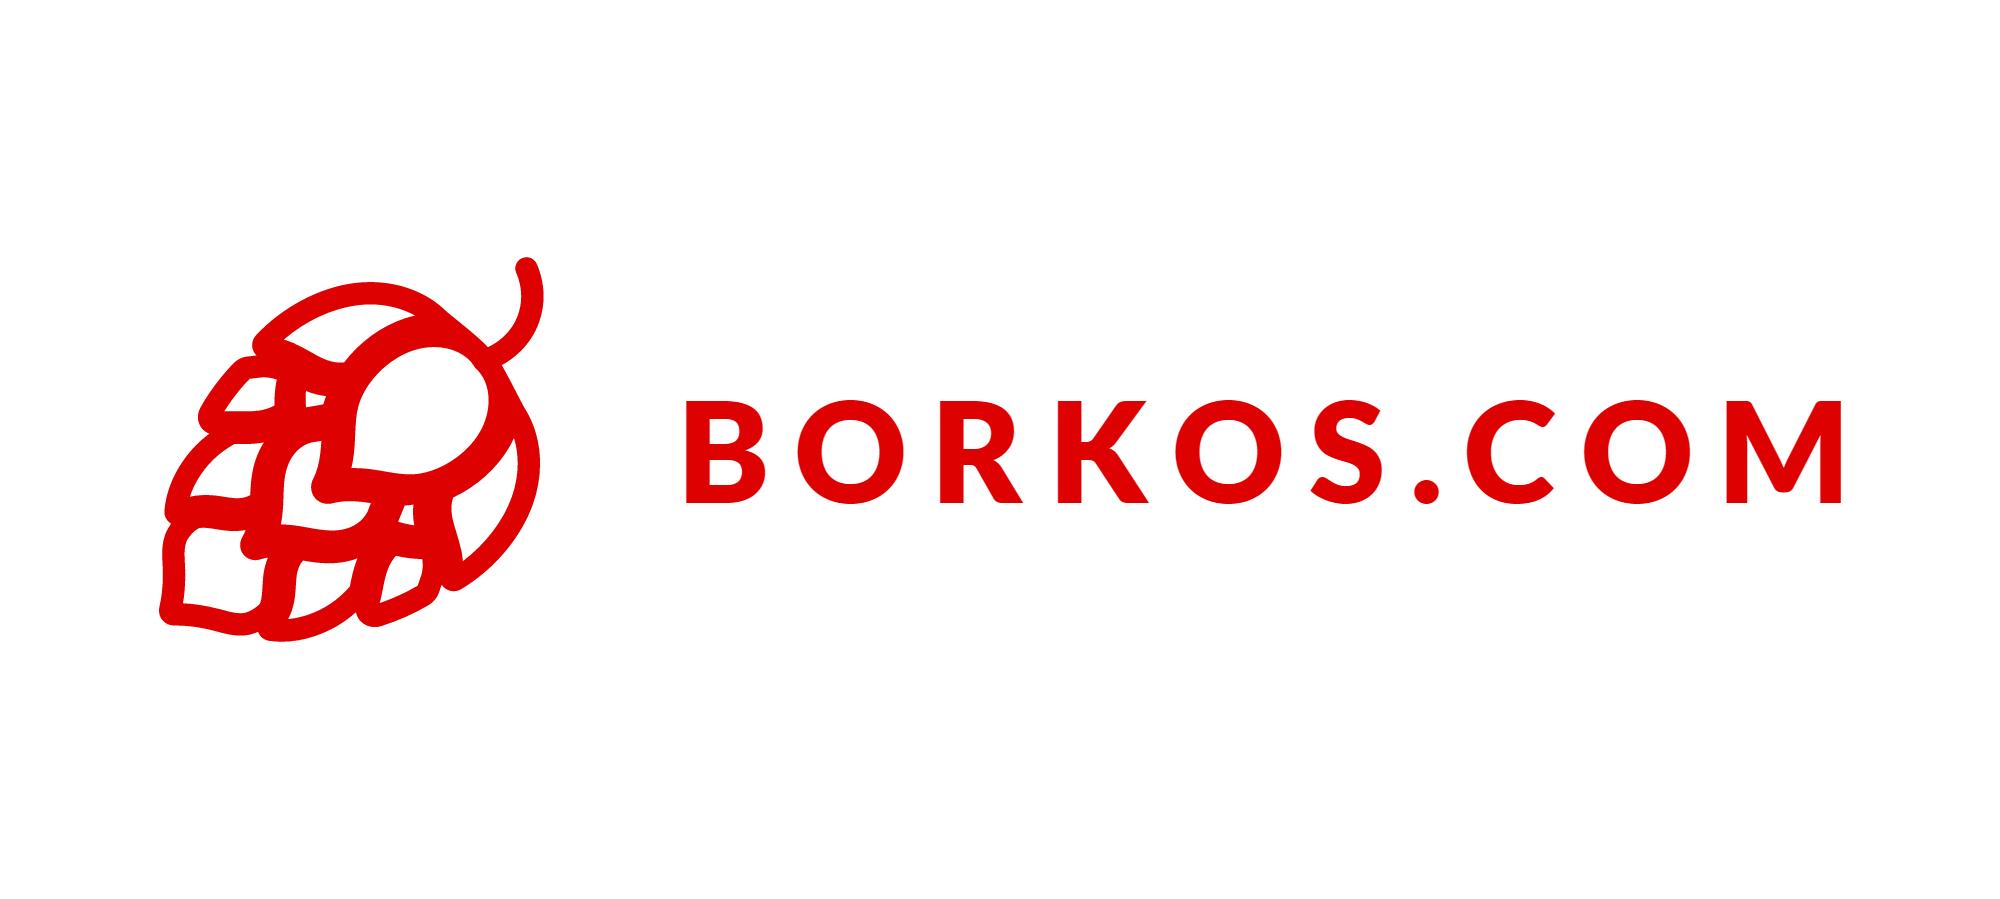 Borkos.com